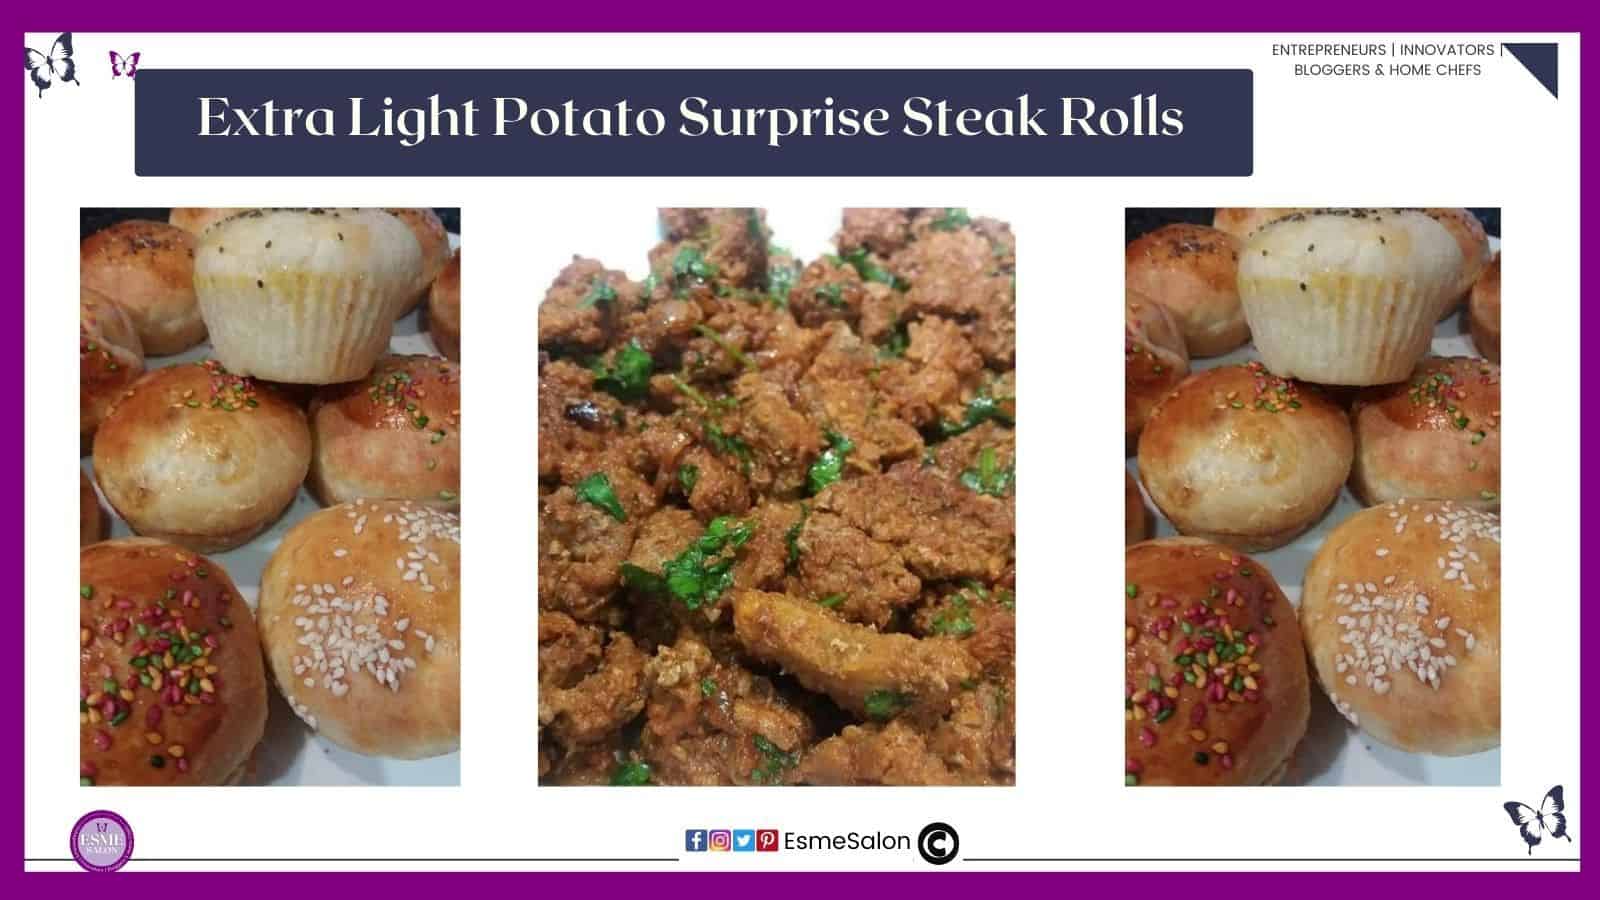 an image of cubes steak as well as Extra Light Potato Surprise Steak Rolls